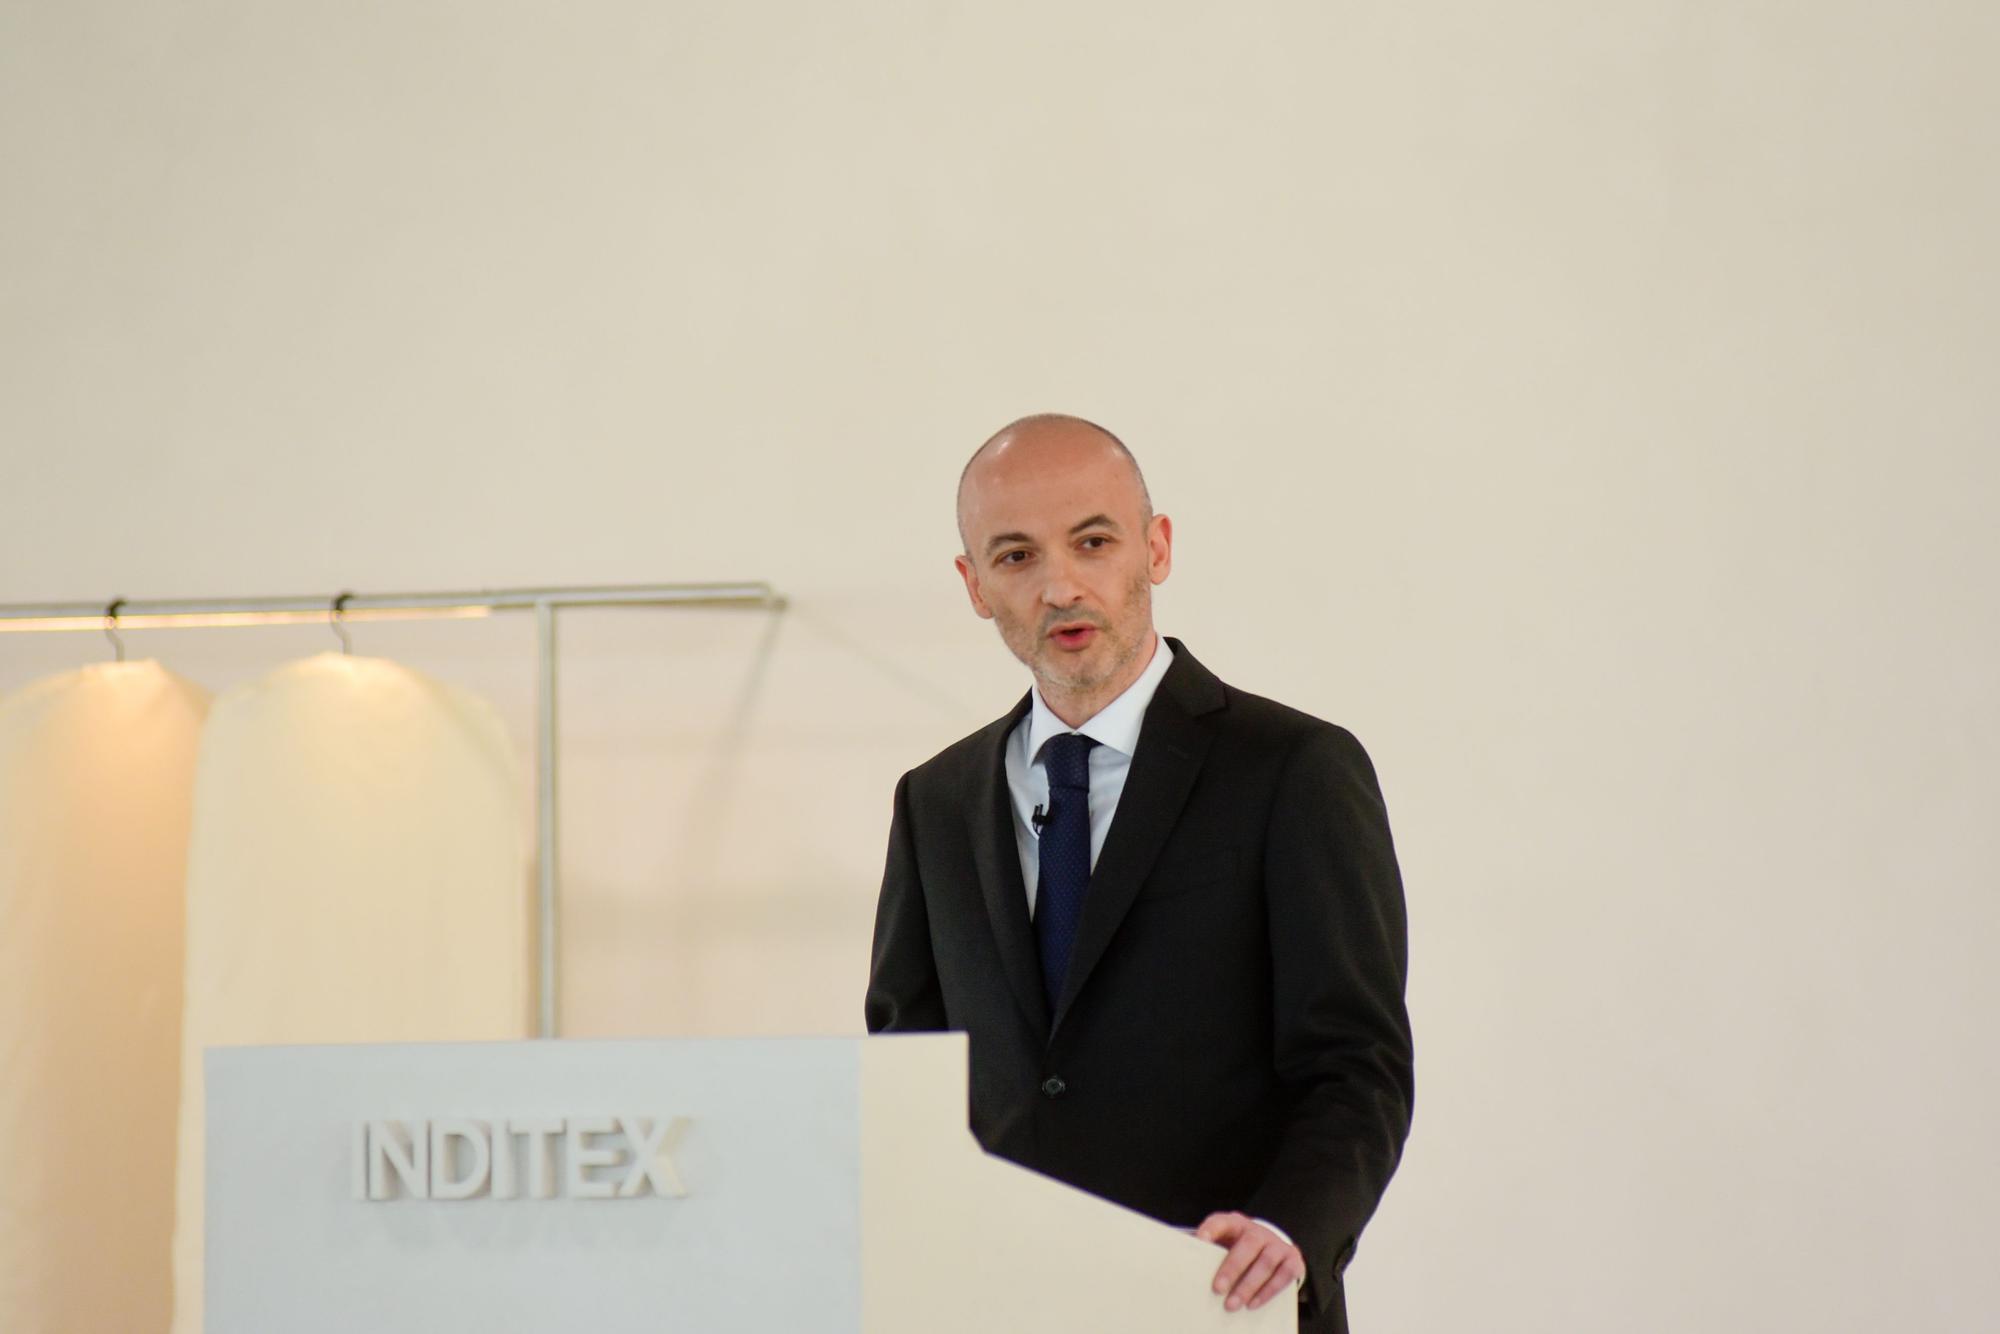 Resultados Inditex 2022: Inditex pulveriza su récord de ventas e ingresos en el año más convulso de su historia